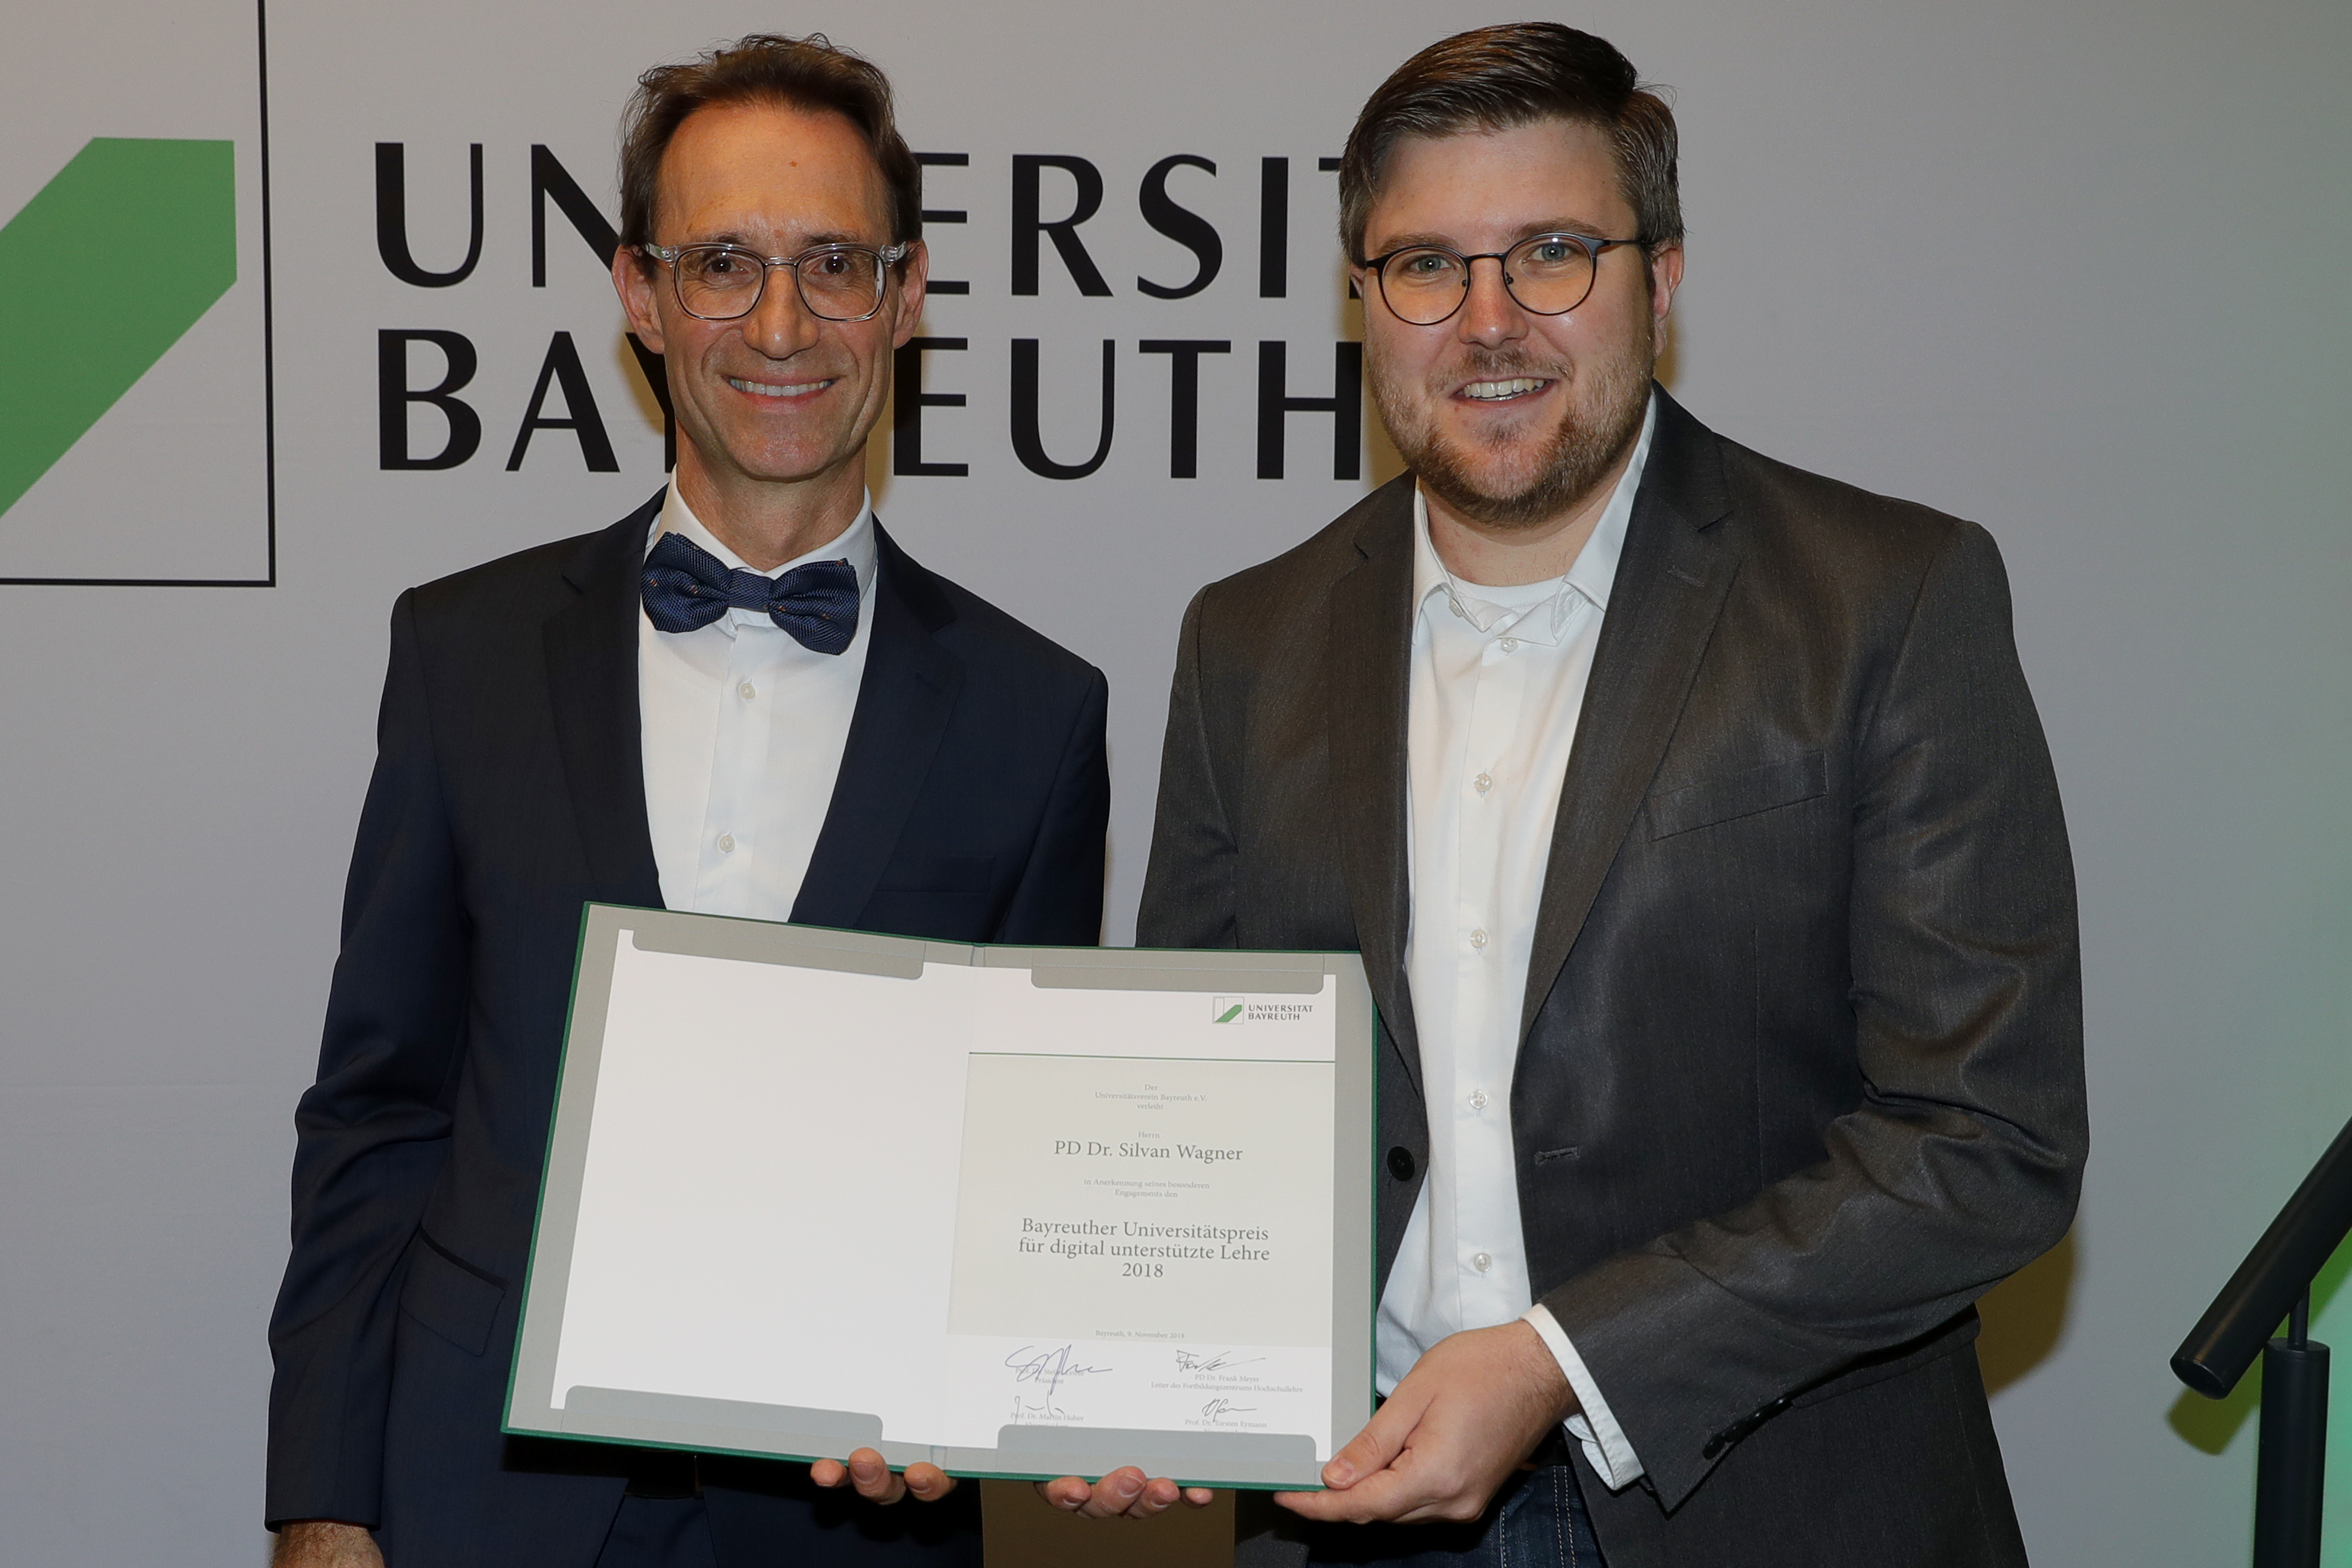 Verleihung des Unipreis für digital gestützte Lehre an PD Dr. Silvan Wagner